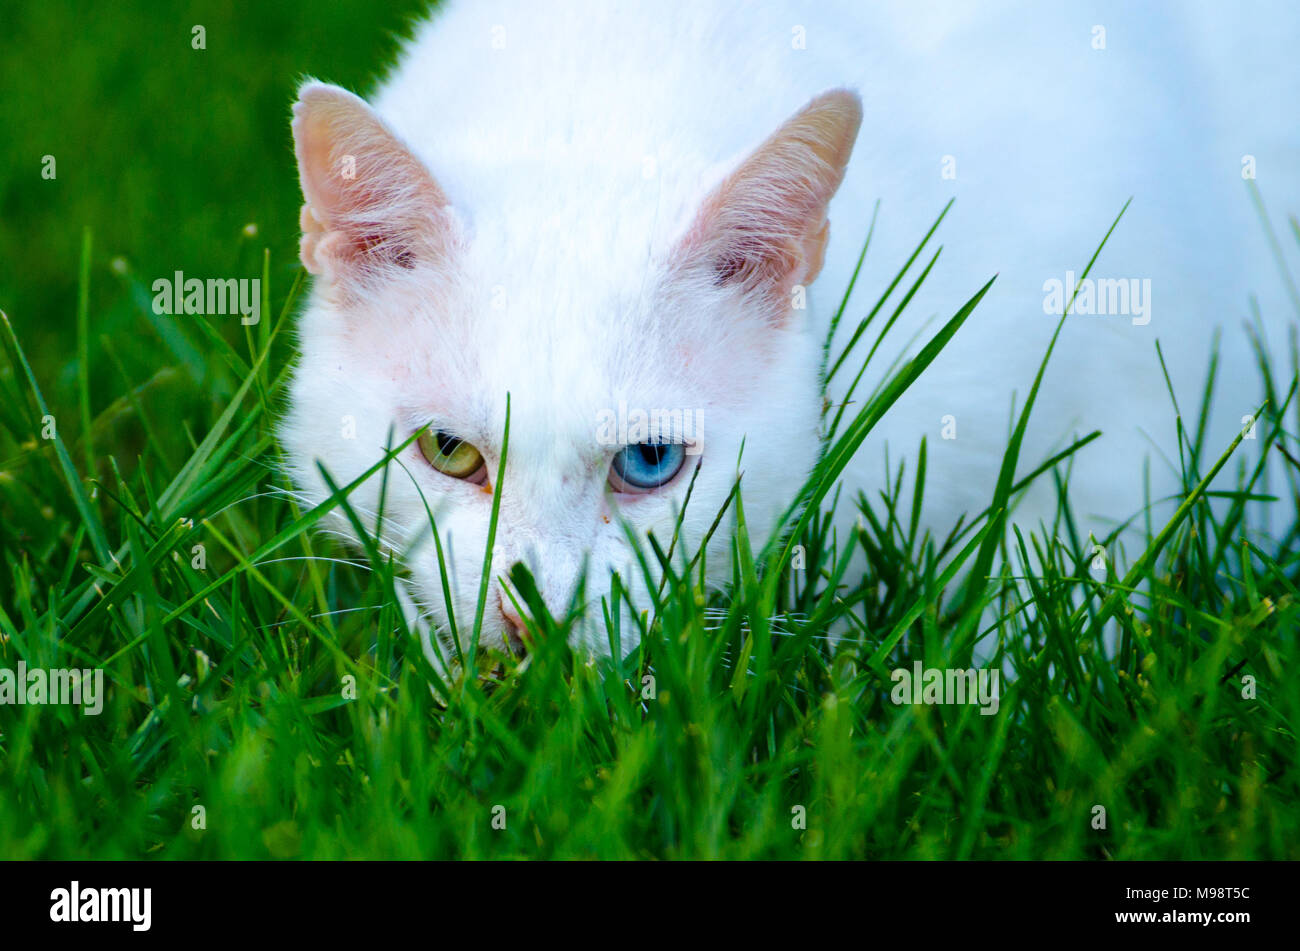 Une maison blanche chat (Felis silvestris catus), avec un œil vert et un œil bleu, regarde à travers l'herbe verte vers l'appareil photo Banque D'Images